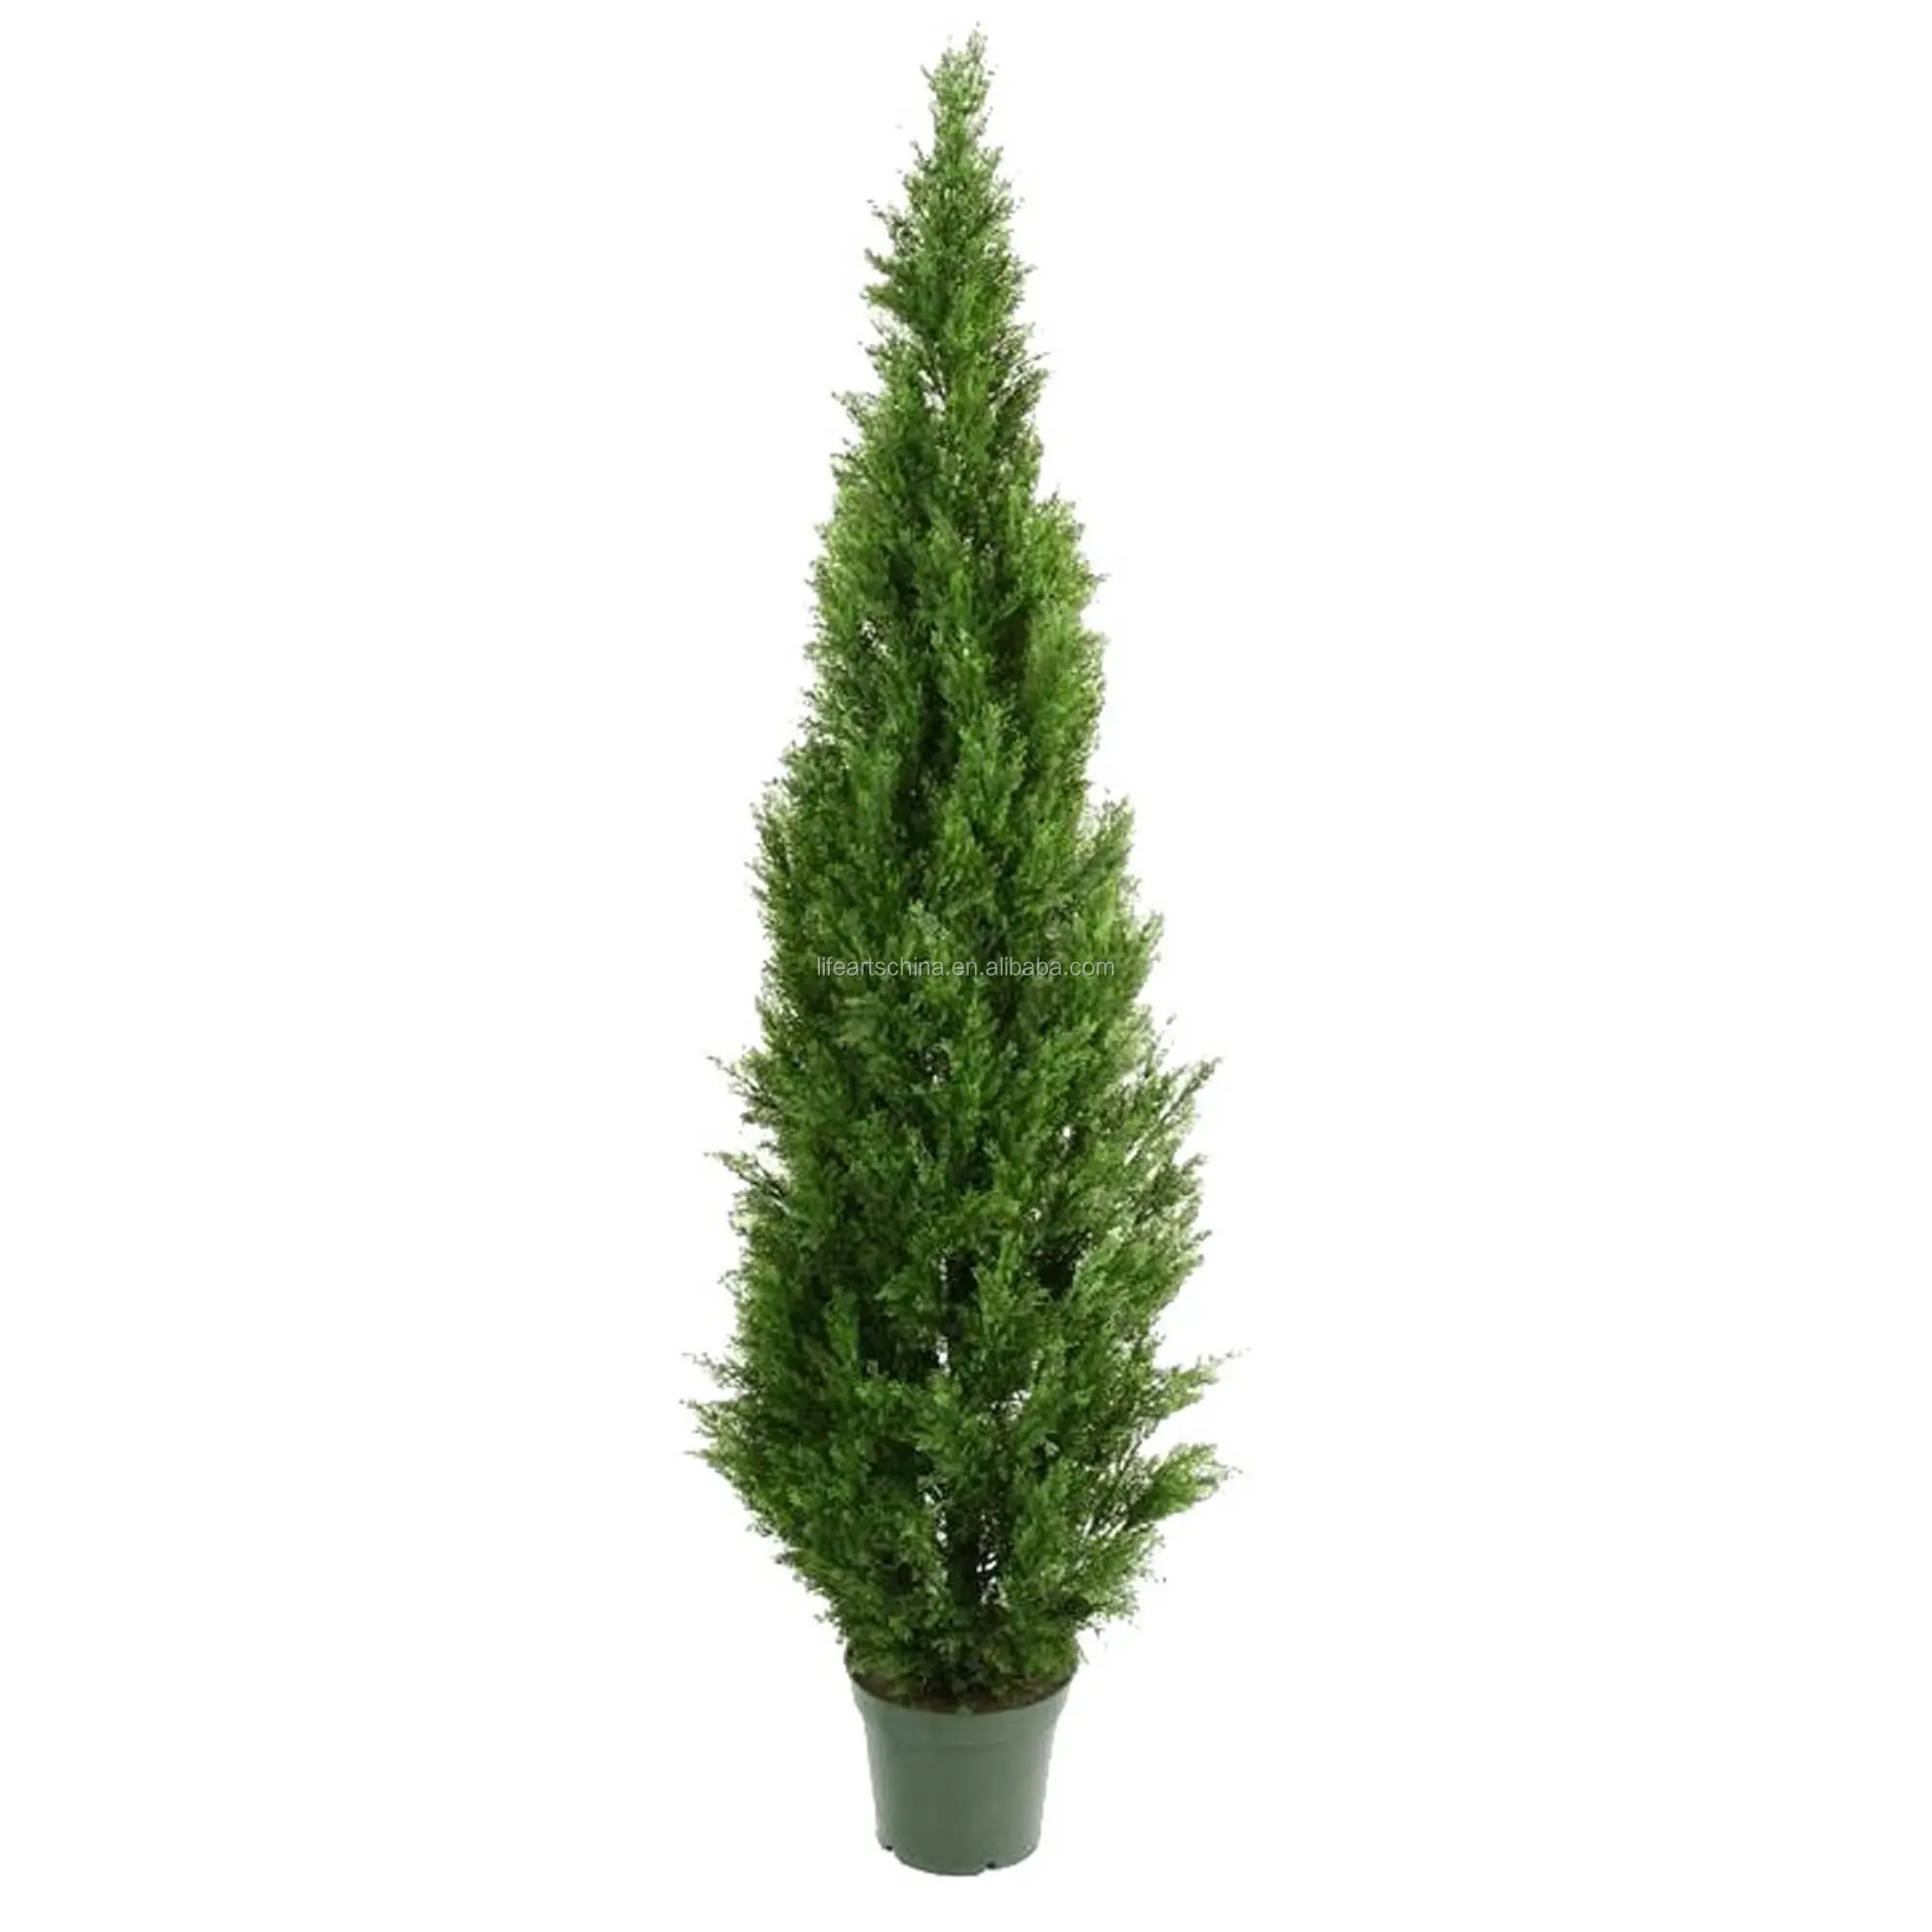 160 سنتيمتر بركة السرو دوامة توبياري شجرة Buy توبياري شجرة العشب الاصطناعي شجرة عيد الميلاد دوامة Product On Alibaba Com